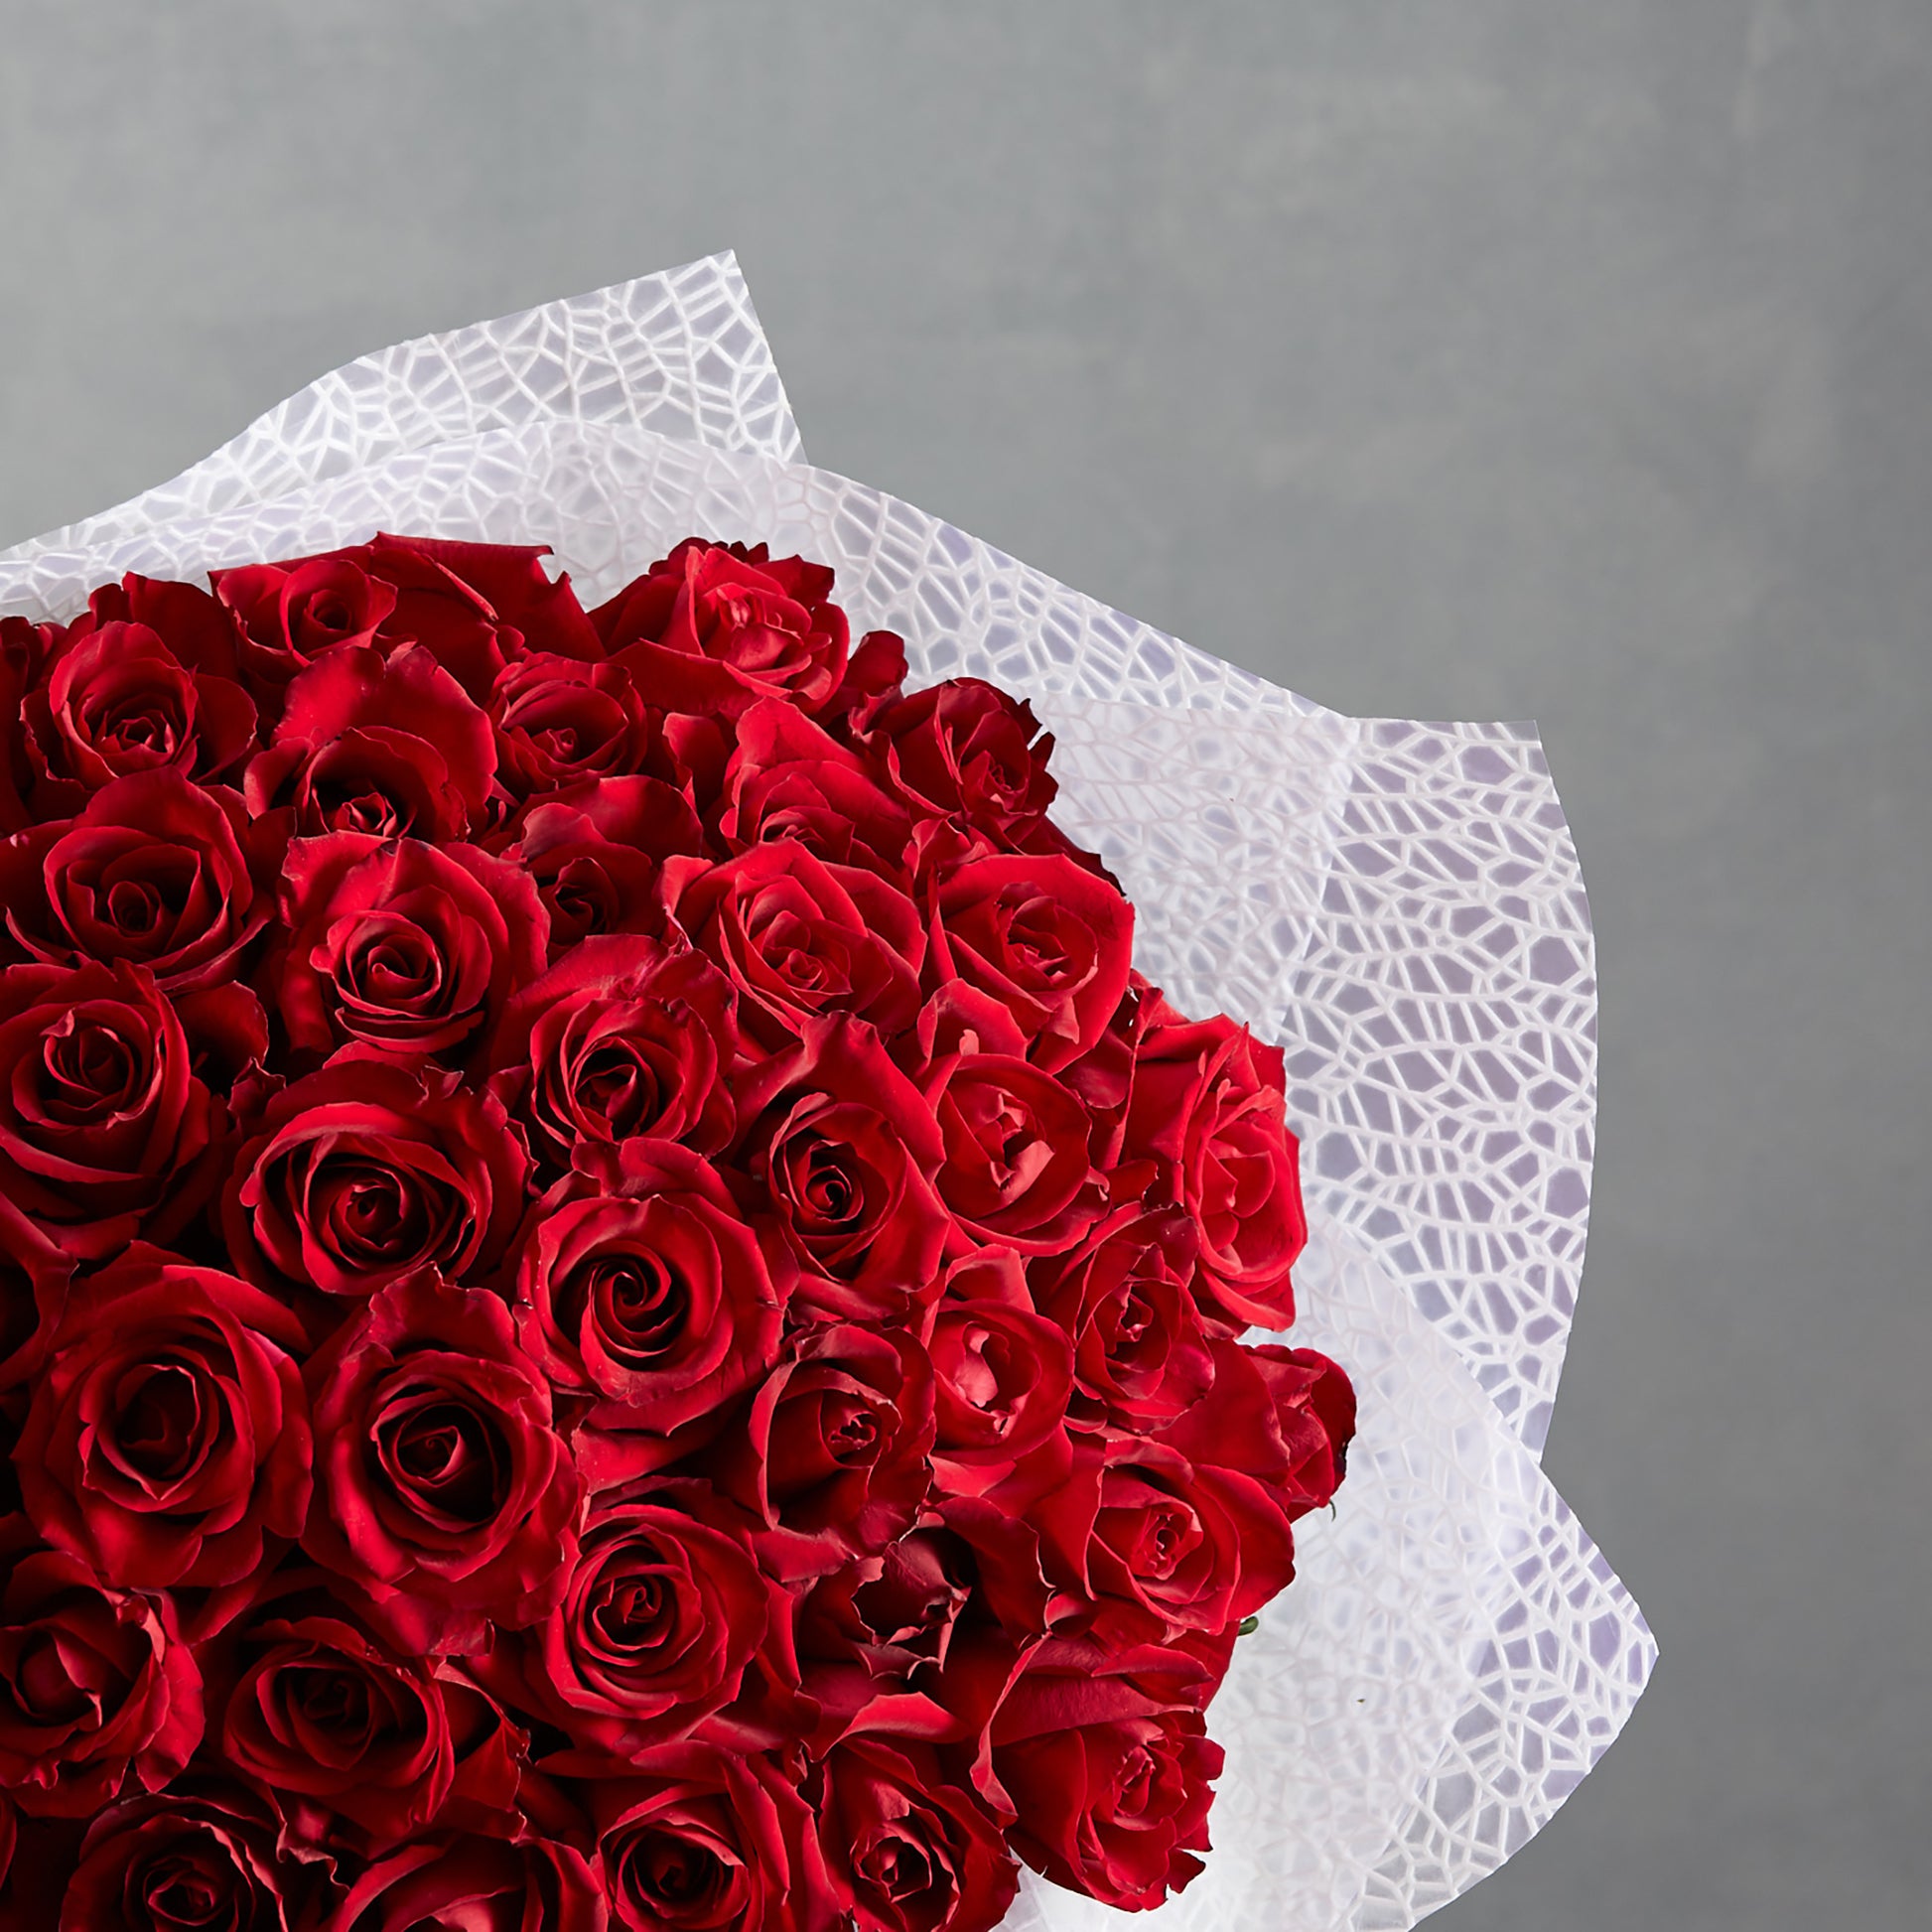 50 Red Roses – Fresh Fresh Flowers